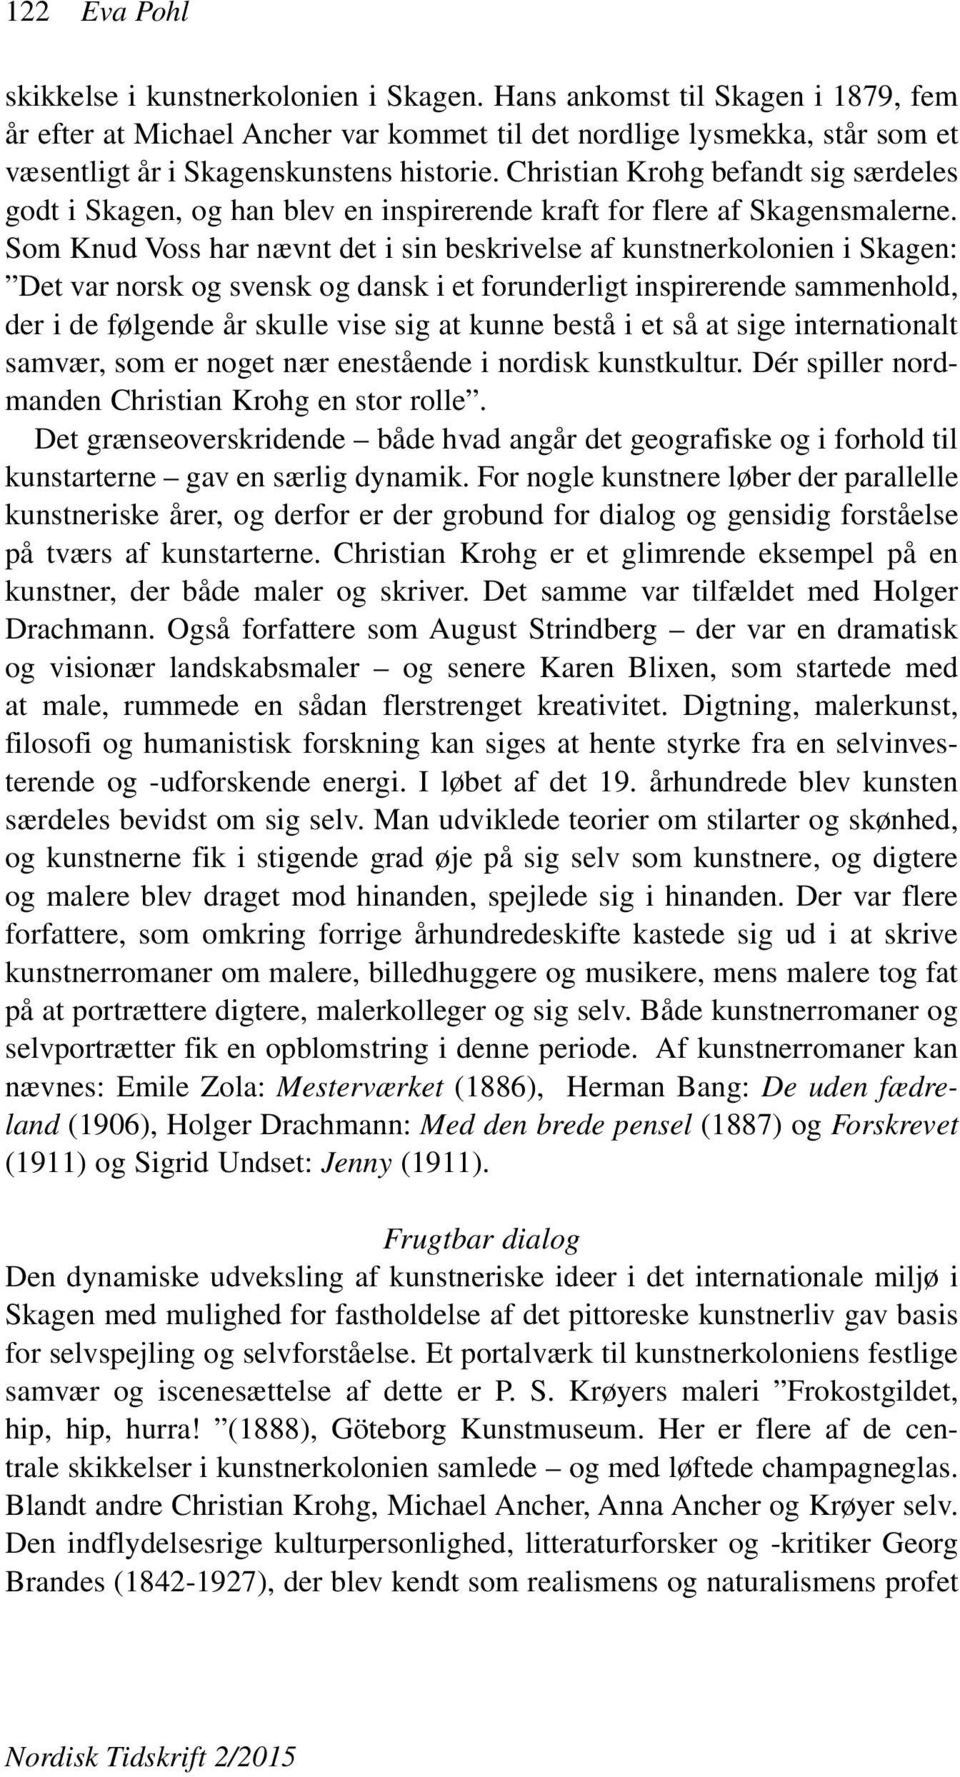 Christian Krohg befandt sig særdeles godt i Skagen, og han blev en inspirerende kraft for flere af Skagensmalerne.